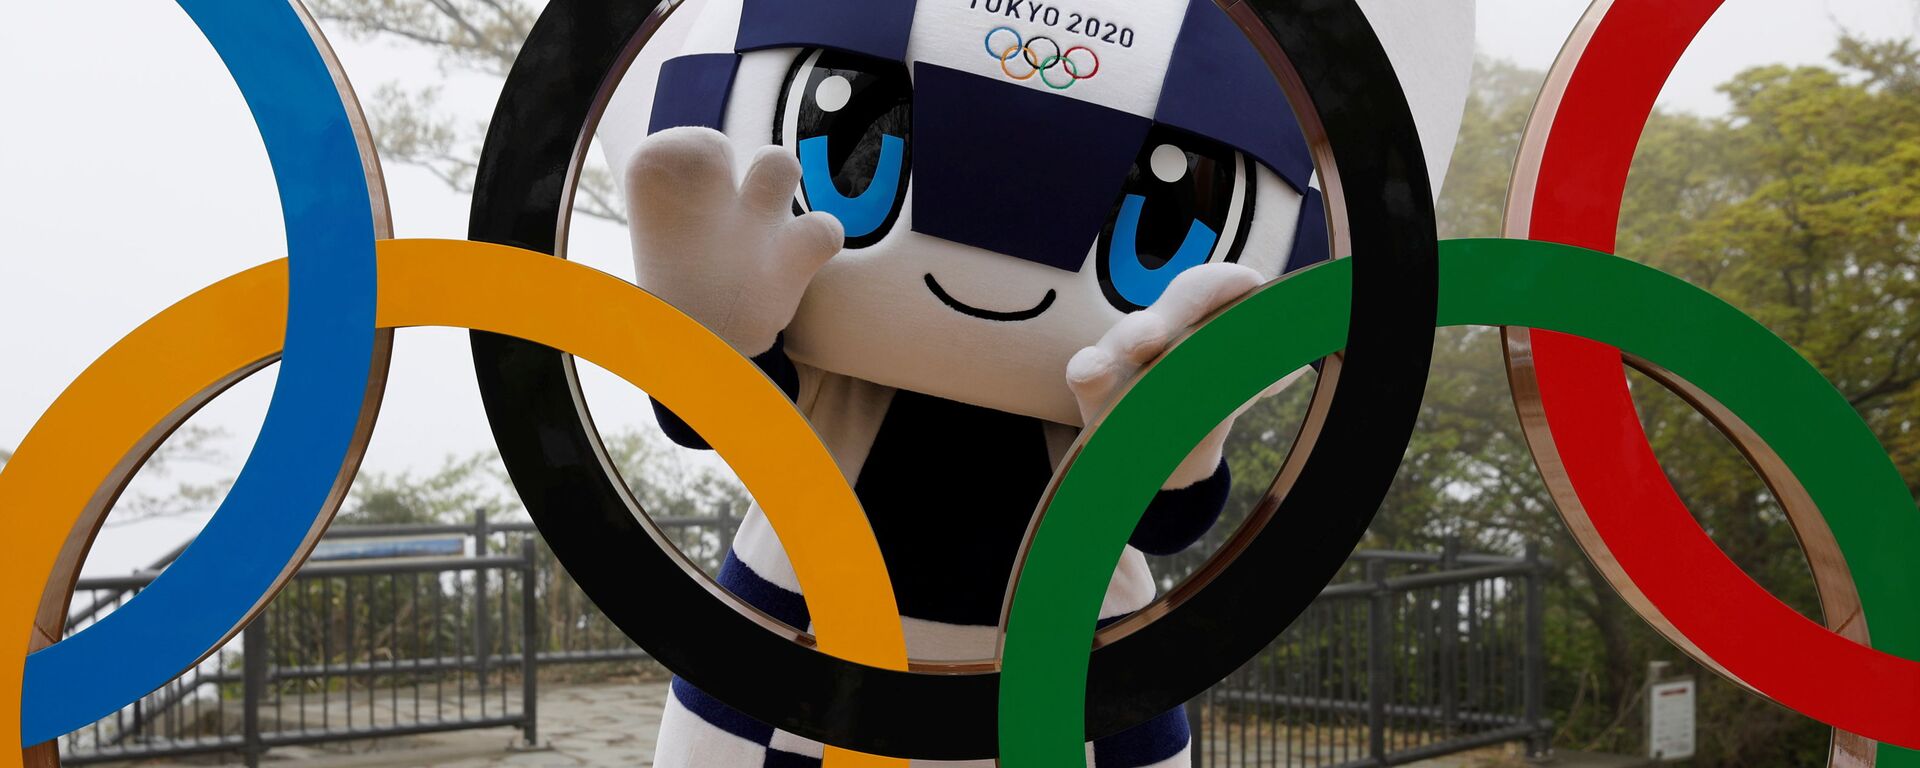 أولمبياد طوكيو 2020 - الألعاب الأولمبية والبارالمبية الصيفية - التميمة الرسمية لدورة الألعاب الأولمبية والبارالمبية طوكيو 2020: ميرايتوا، طوكيو، اليابان 14 أبريل 2021 - سبوتنيك عربي, 1920, 03.06.2021